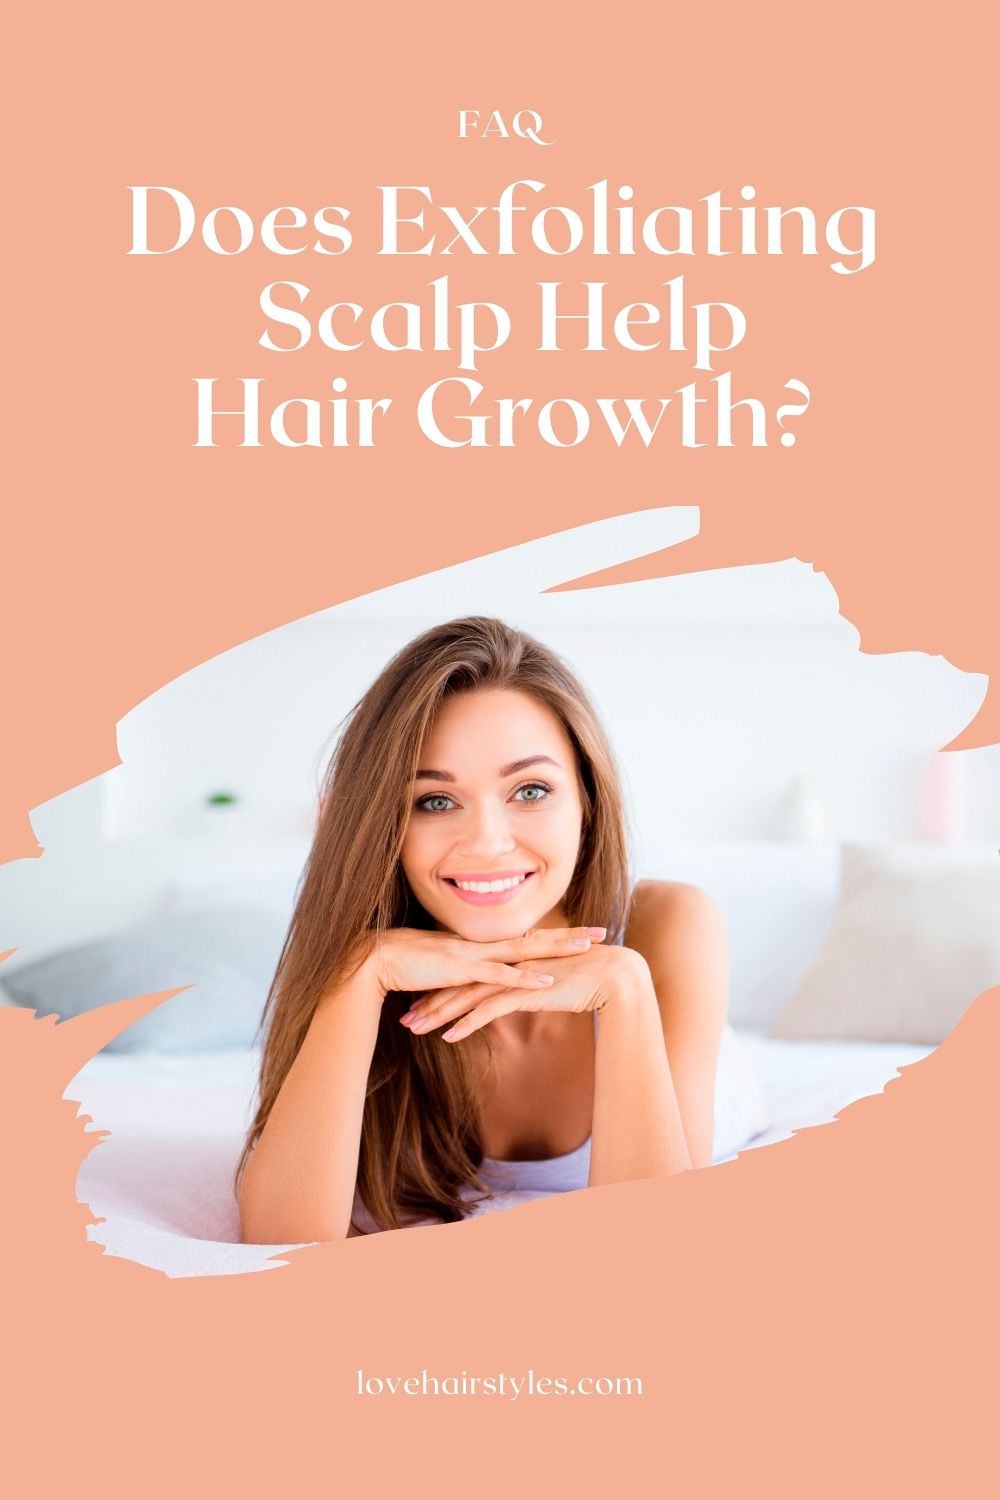 L'exfoliation du cuir chevelu aide-t-elle la croissance des cheveux?